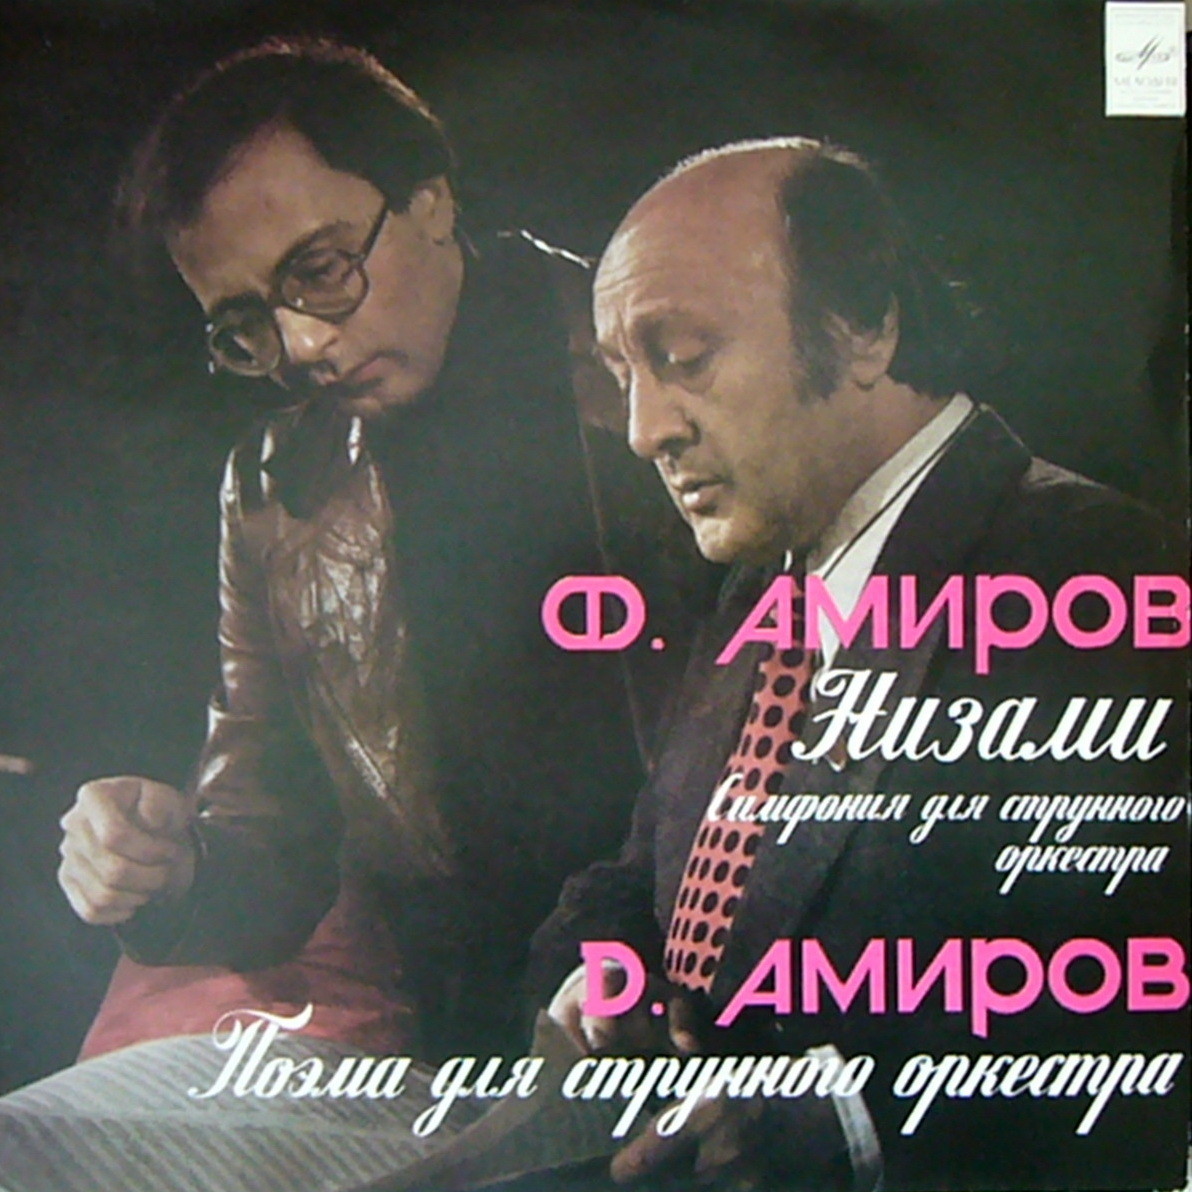 Ф. АМИРОВ: Низами: симфония для струнного оркестра / Д. АМИРОВ: Поэма для струнного оркестра